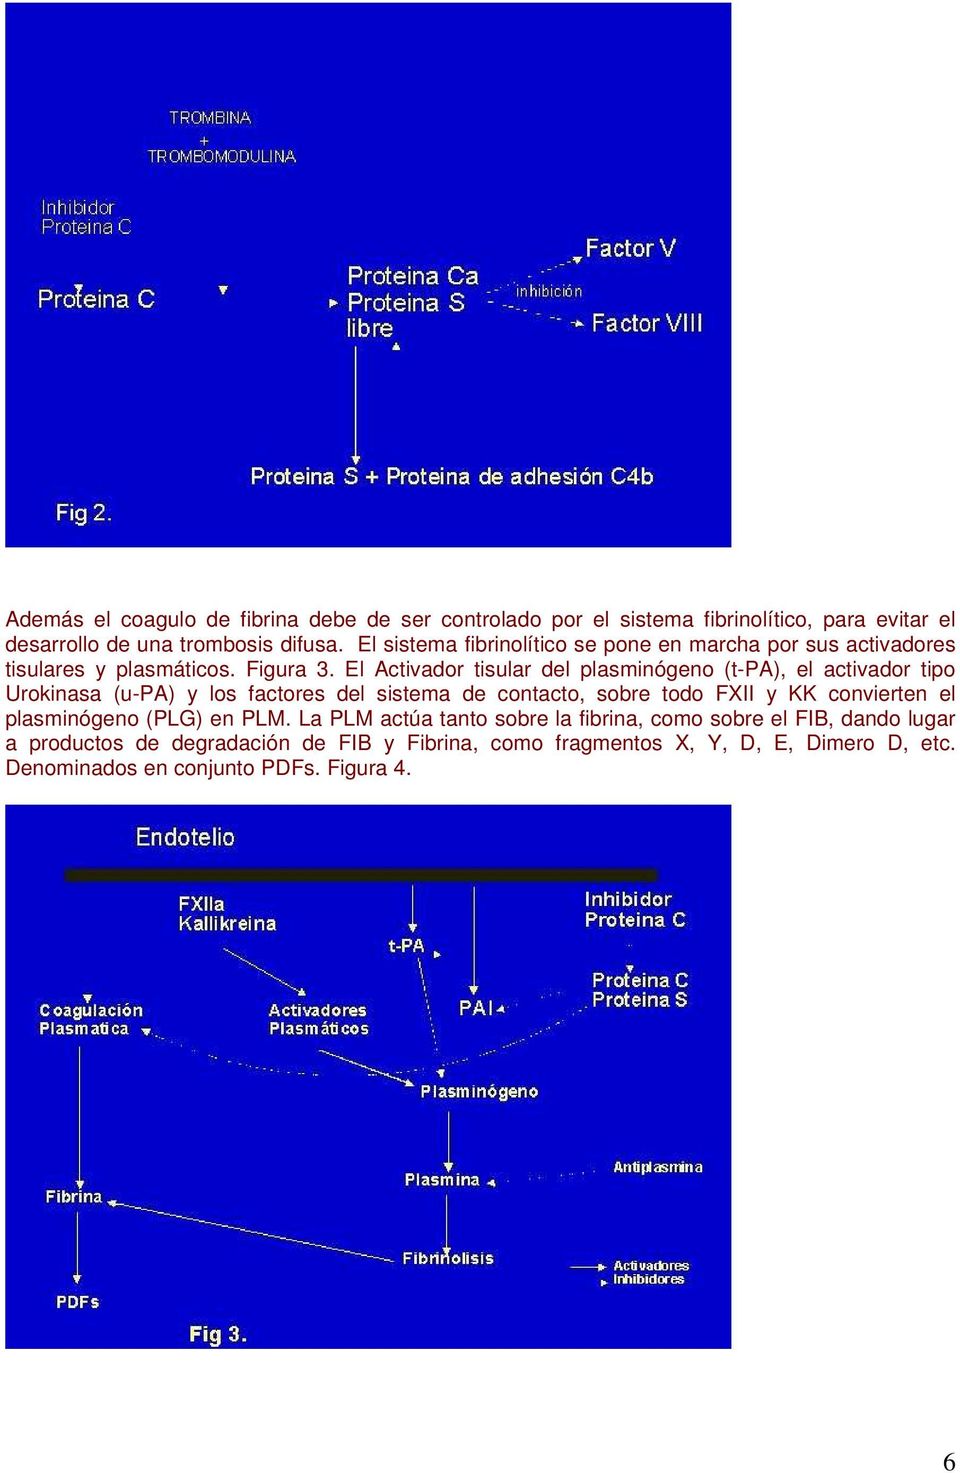 El Activador tisular del plasminógeno (t-pa), el activador tipo Urokinasa (u-pa) y los factores del sistema de contacto, sobre todo FXII y KK convierten